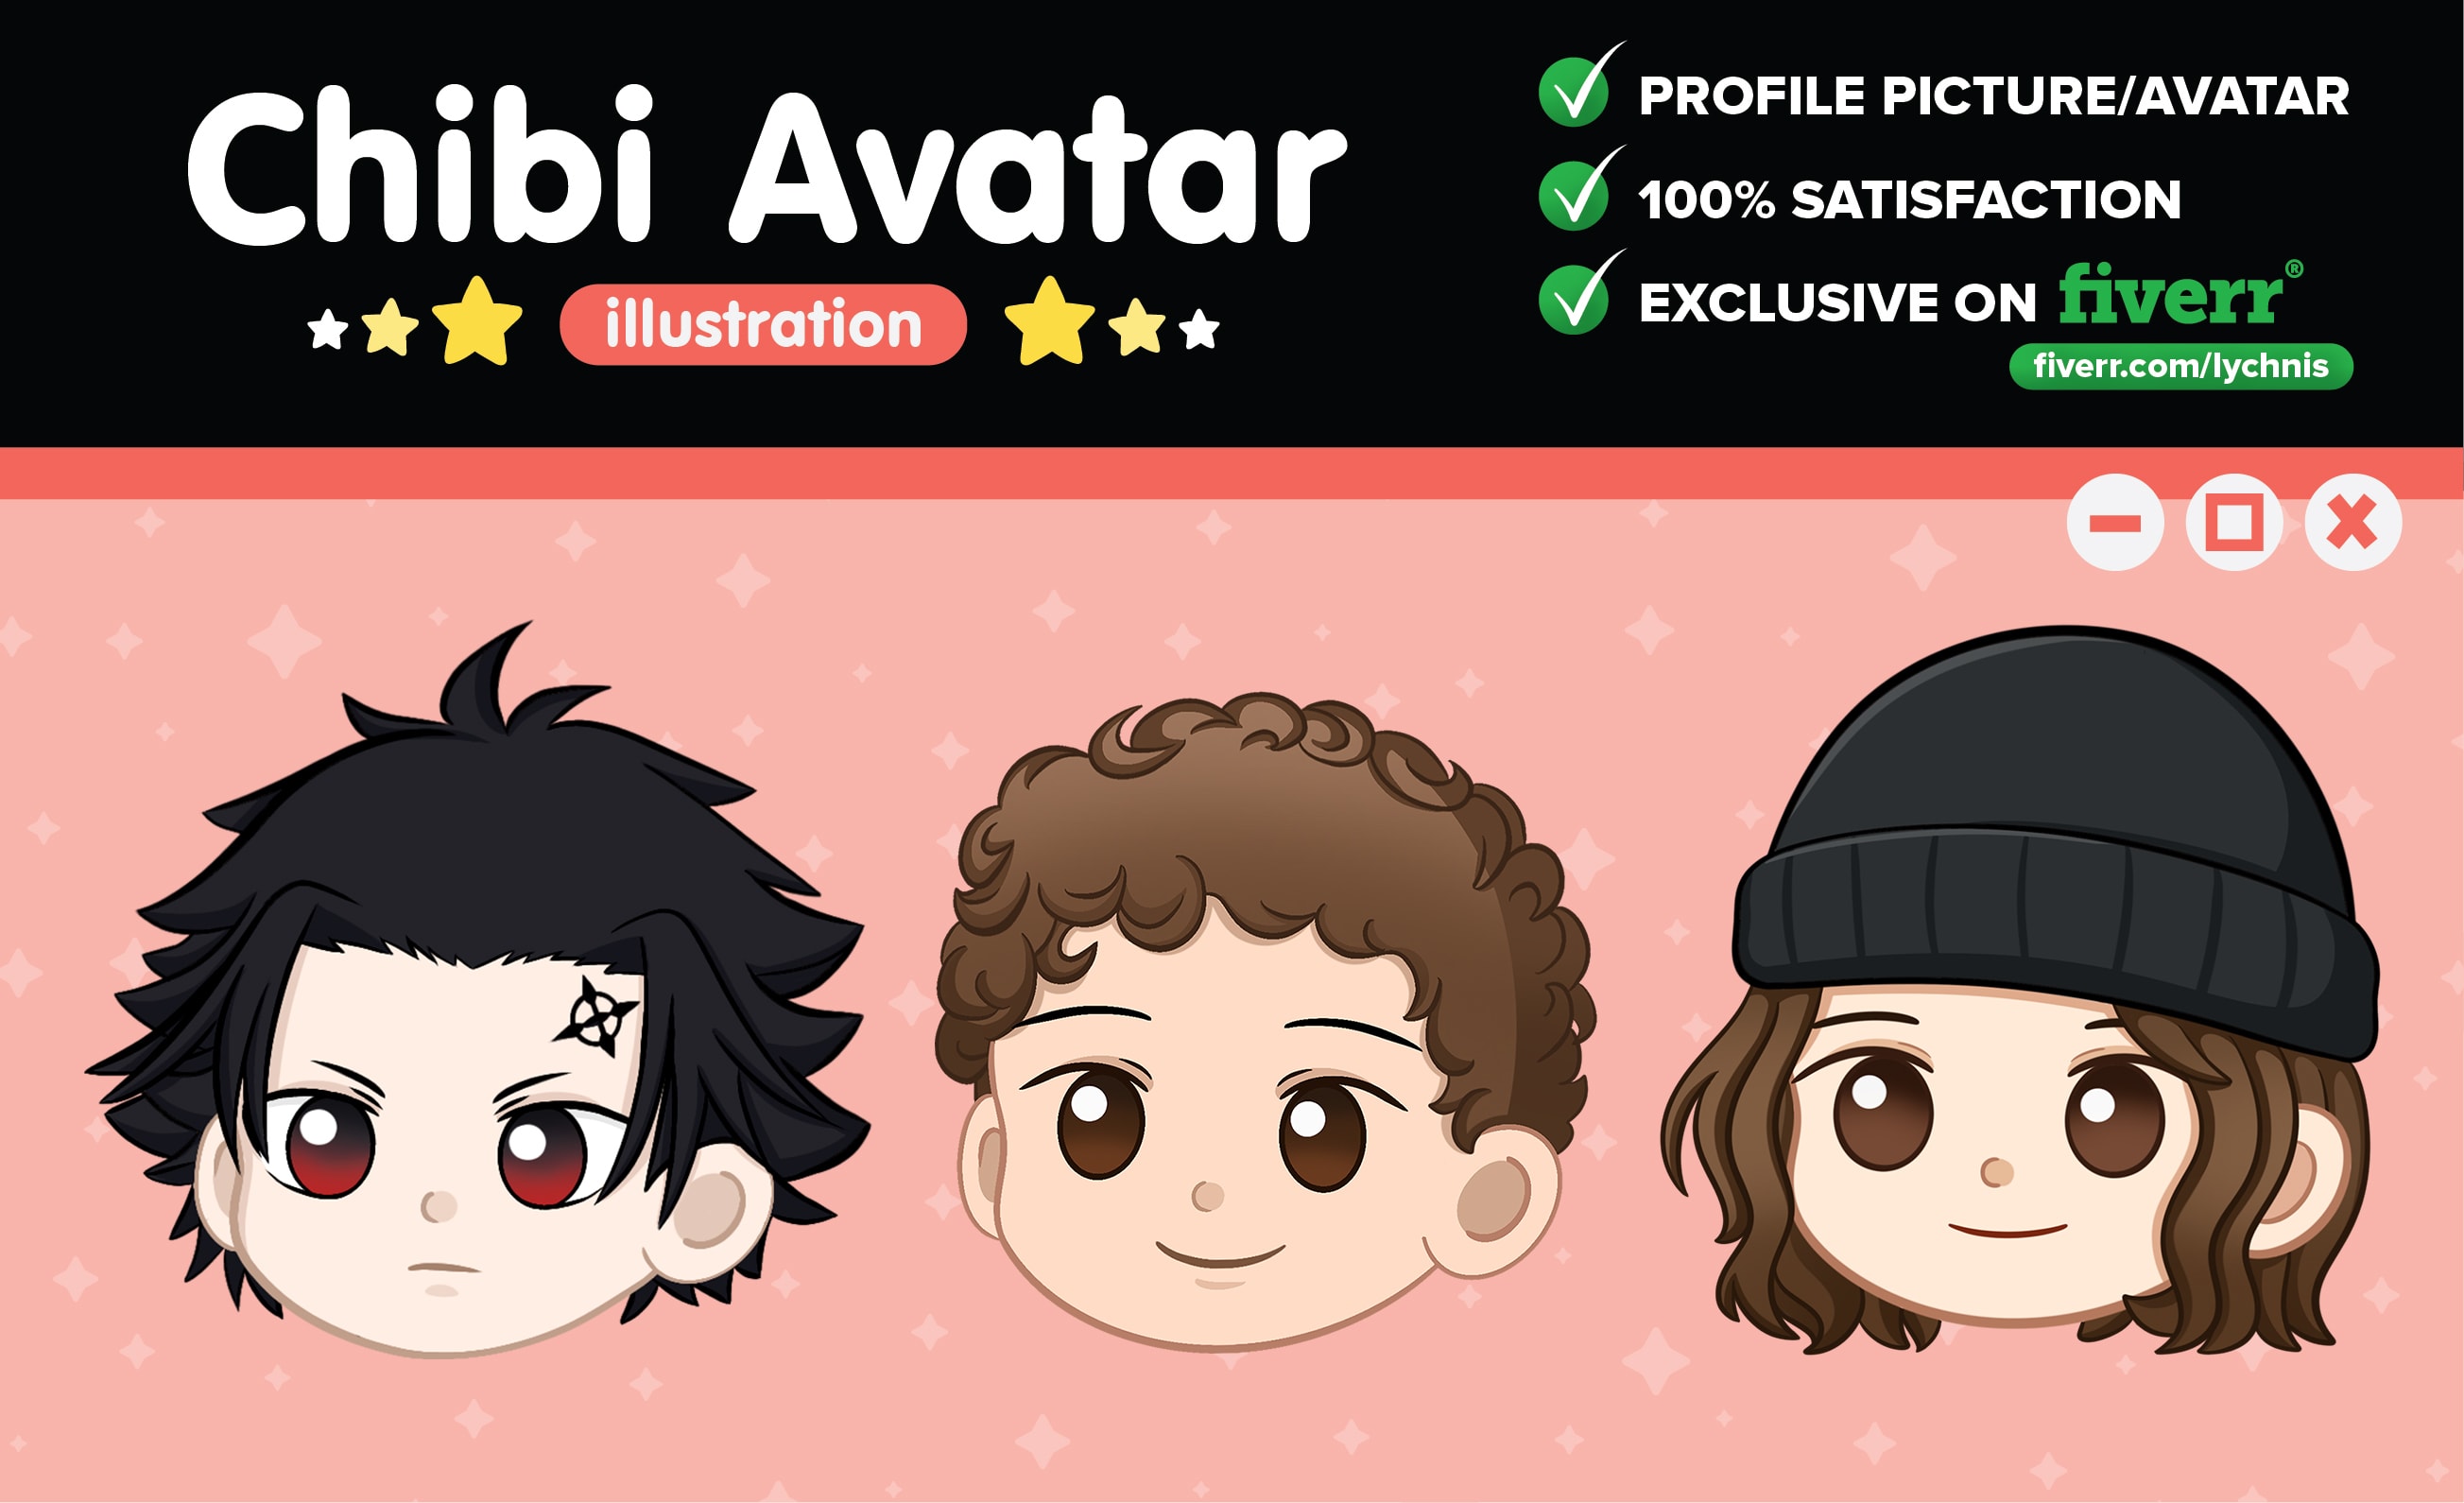 Anime avatar editor sẽ giúp cho bạn tạo ra những chiếc avatar độc đáo và thú vị nhất. Với nhiều tính năng và công nghệ mới, công việc tạo avatar sẽ dễ dàng hơn và tuyệt đối không bị giới hạn bởi độ sáng tạo của bạn.